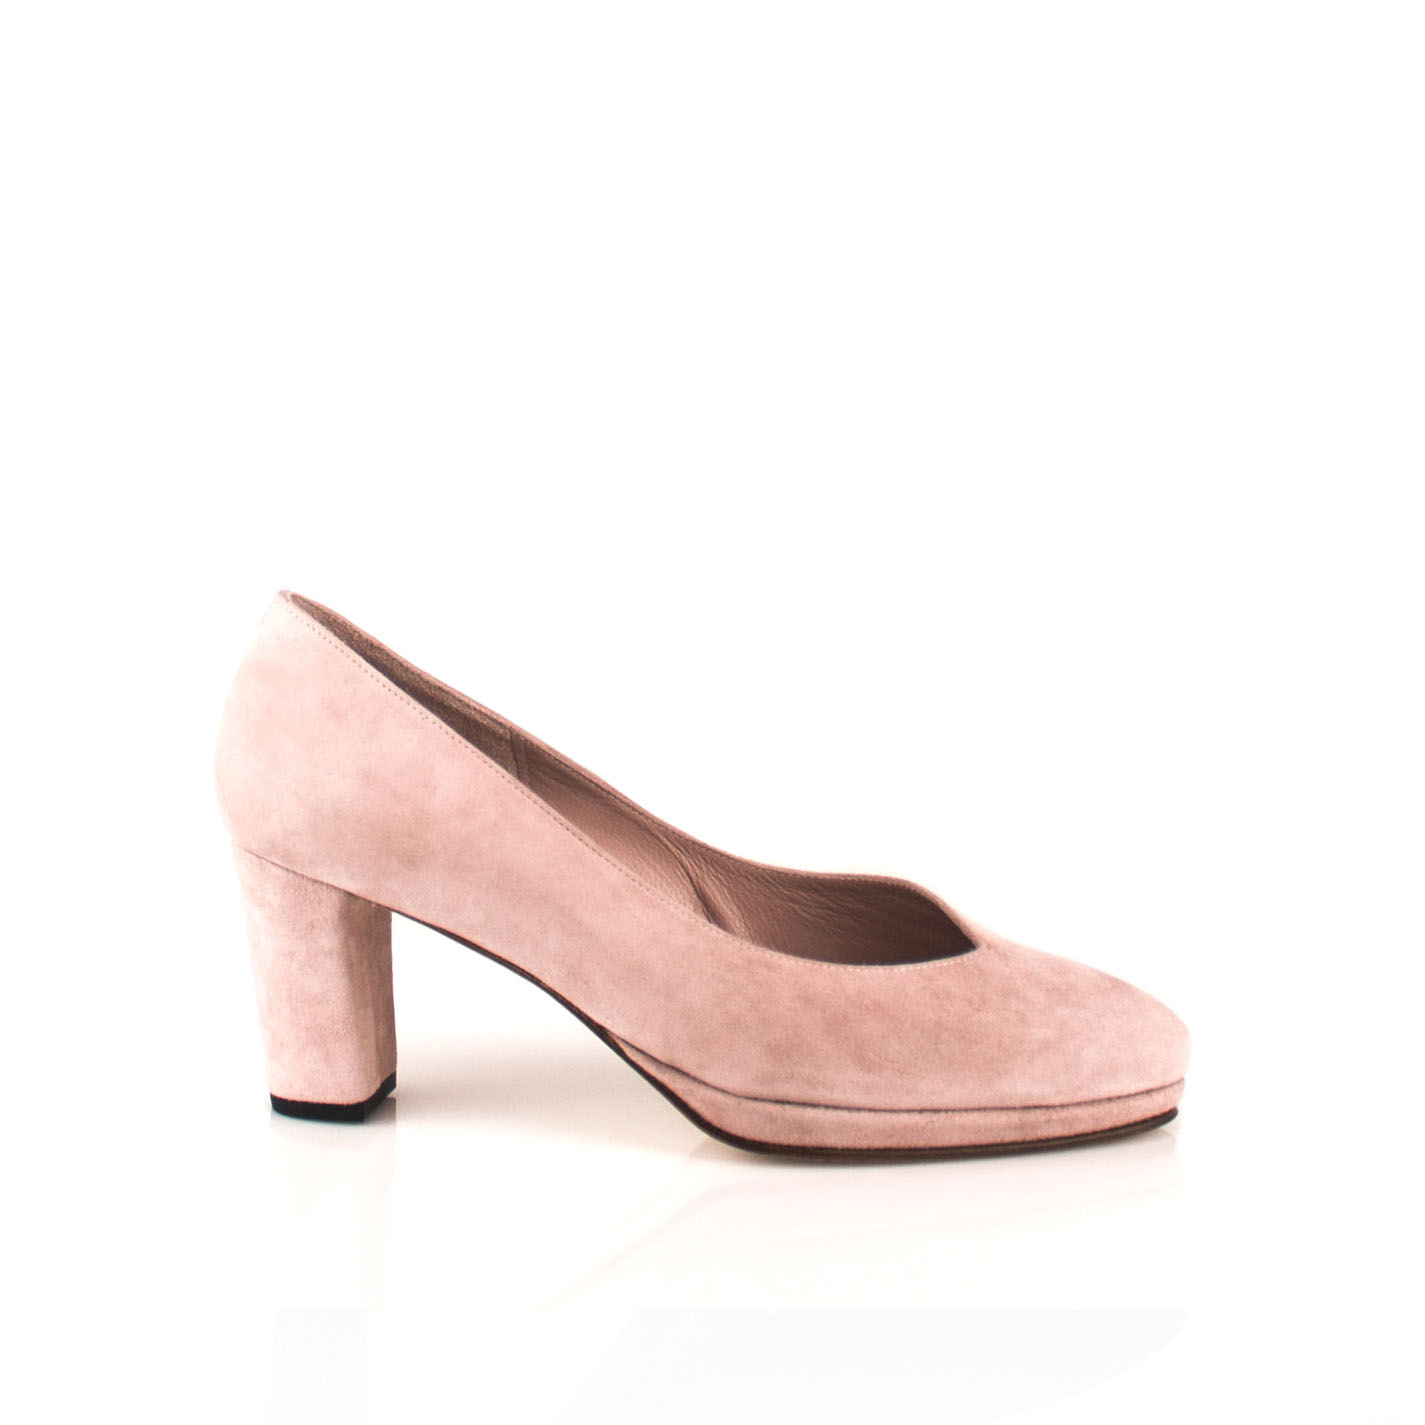 Zapatos ante rosa con plataforma tacon de 6 cm